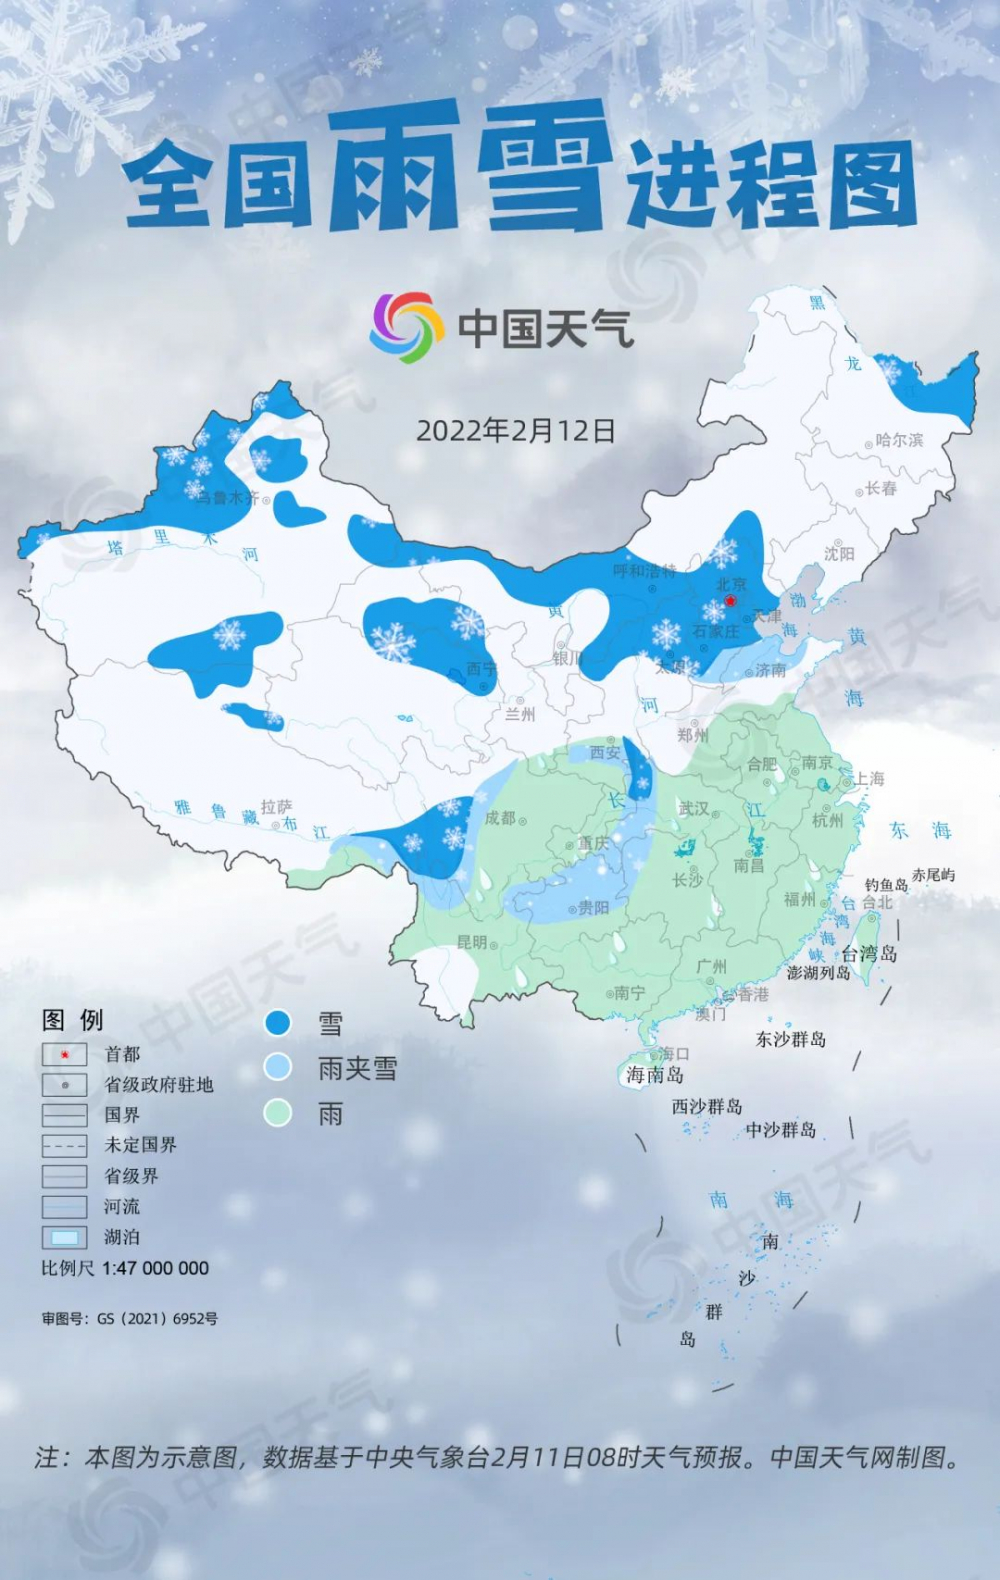 据中国天气网气象分析师周颖介绍,周六白天,冷空气东移,配合偏南水汽